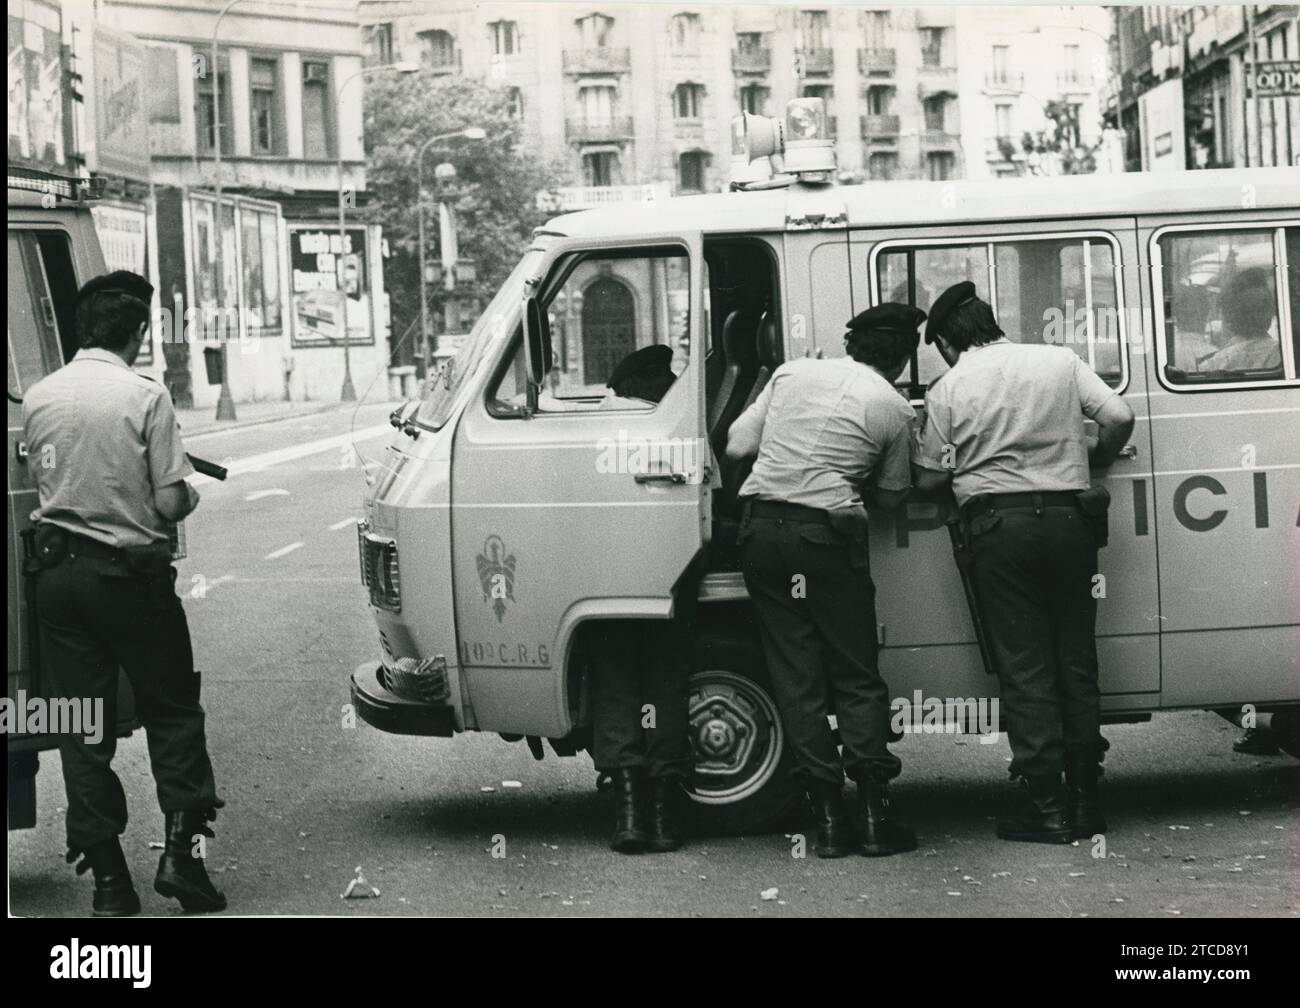 Barcelona 24.05.1981. Raub bei der Zentralbank von Barcelona. Am 23. Mai drangen die Räuber in das Hauptquartier ein, ein siebenstöckiges Gebäude auf der Plaza de Cataluña. Die GEO hat am Sonntag den 24. Gehandelt und neun der elf Angreifer verhaftet. Ein weiterer wurde getötet. Kurz vor acht Uhr am Sonntag, den 24., nahm die GEO Positionen rund um die Zentralbank ein, um die Aktion zu beginnen, die es ermöglichte, alle Geiseln sicher freizulassen. Auf dem Bild, einige nationale Polizeibeamte im Überwachungsdienst, hinter einem Lieferwagen. Quelle: Album / Archivo ABC / José García Stockfoto